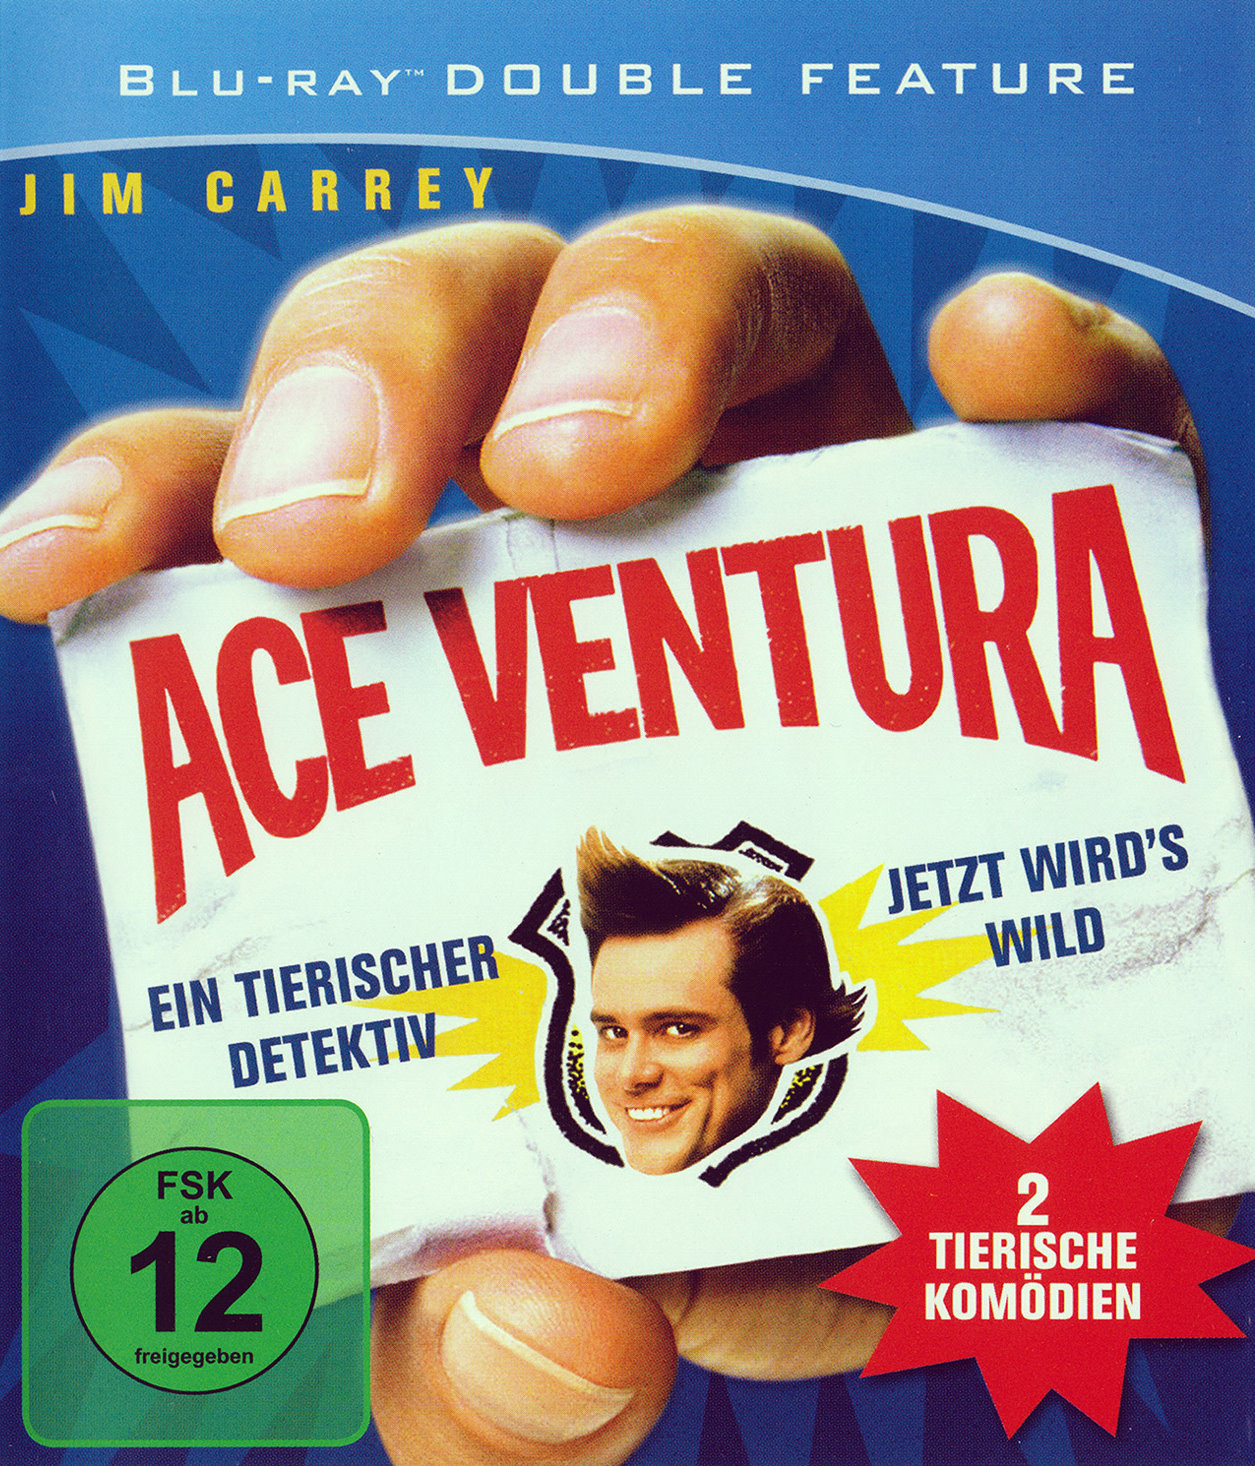 Cover - Ace Ventura - Ein tierischer Detektiv.jpg